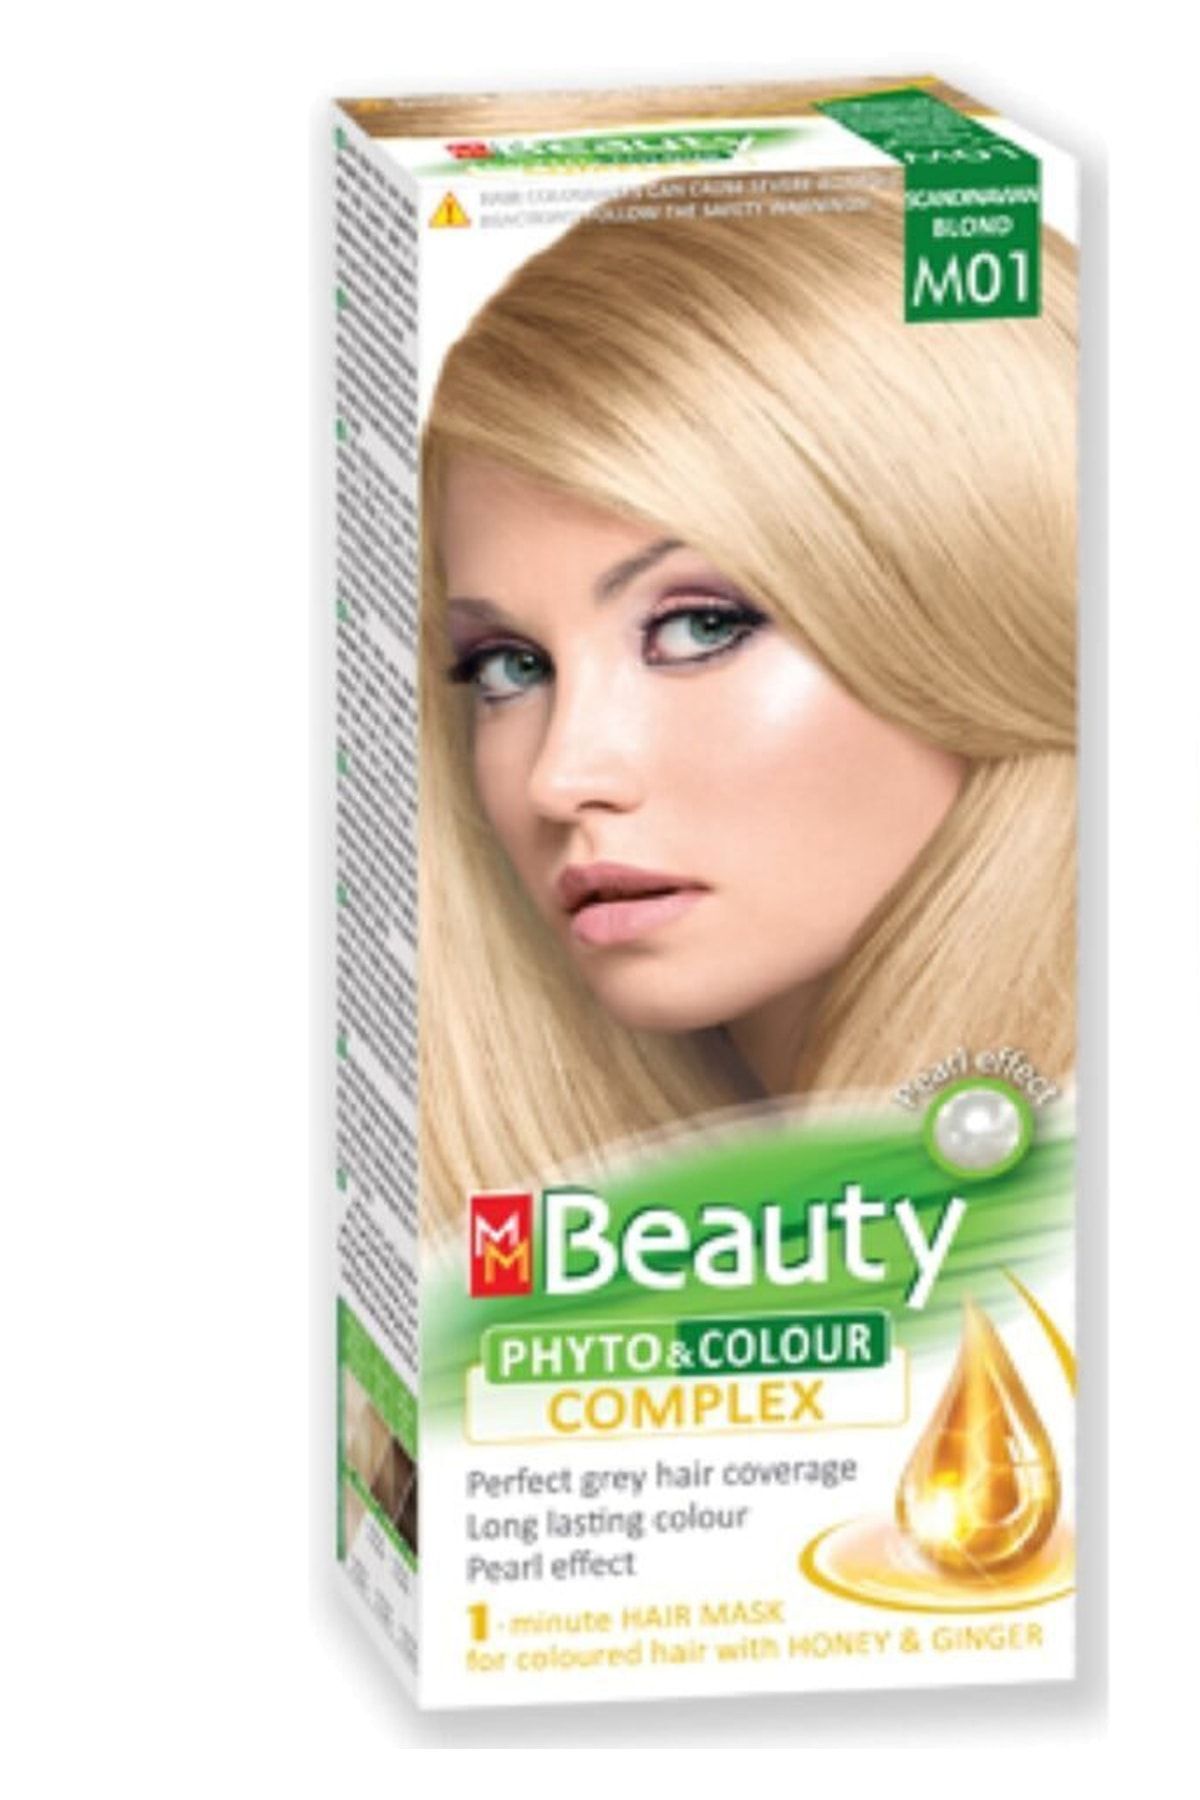 MM Beauty Saç Boyası M01 ( Platin Kumral ) Set Boya